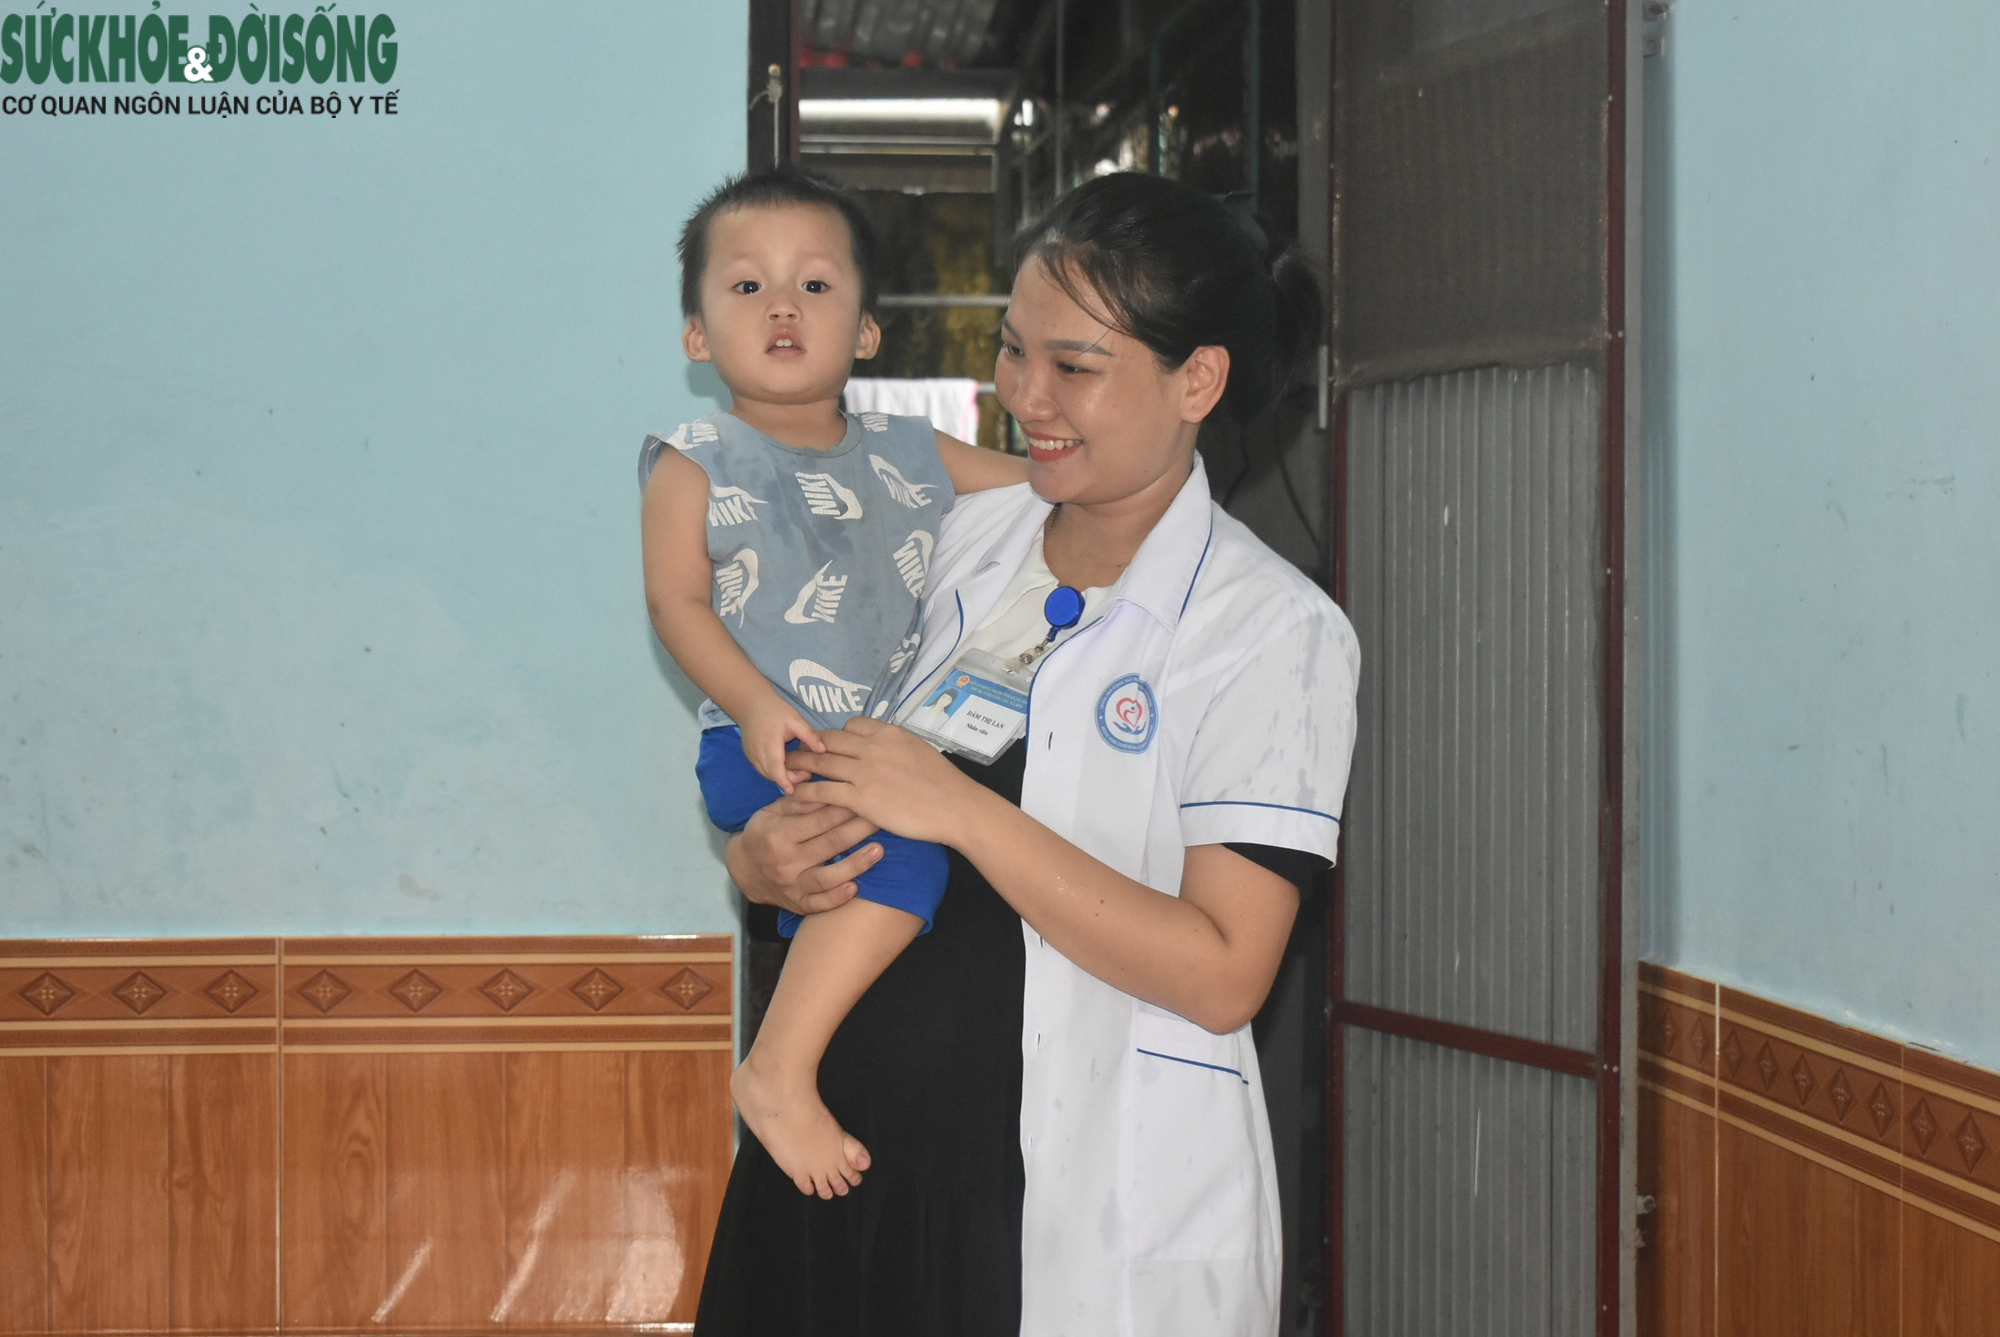 Những yêu thương ở trung tâm bảo trợ xã hội - Nơi nuôi dưỡng cuộc đời cô y sĩ trẻ- Ảnh 1.